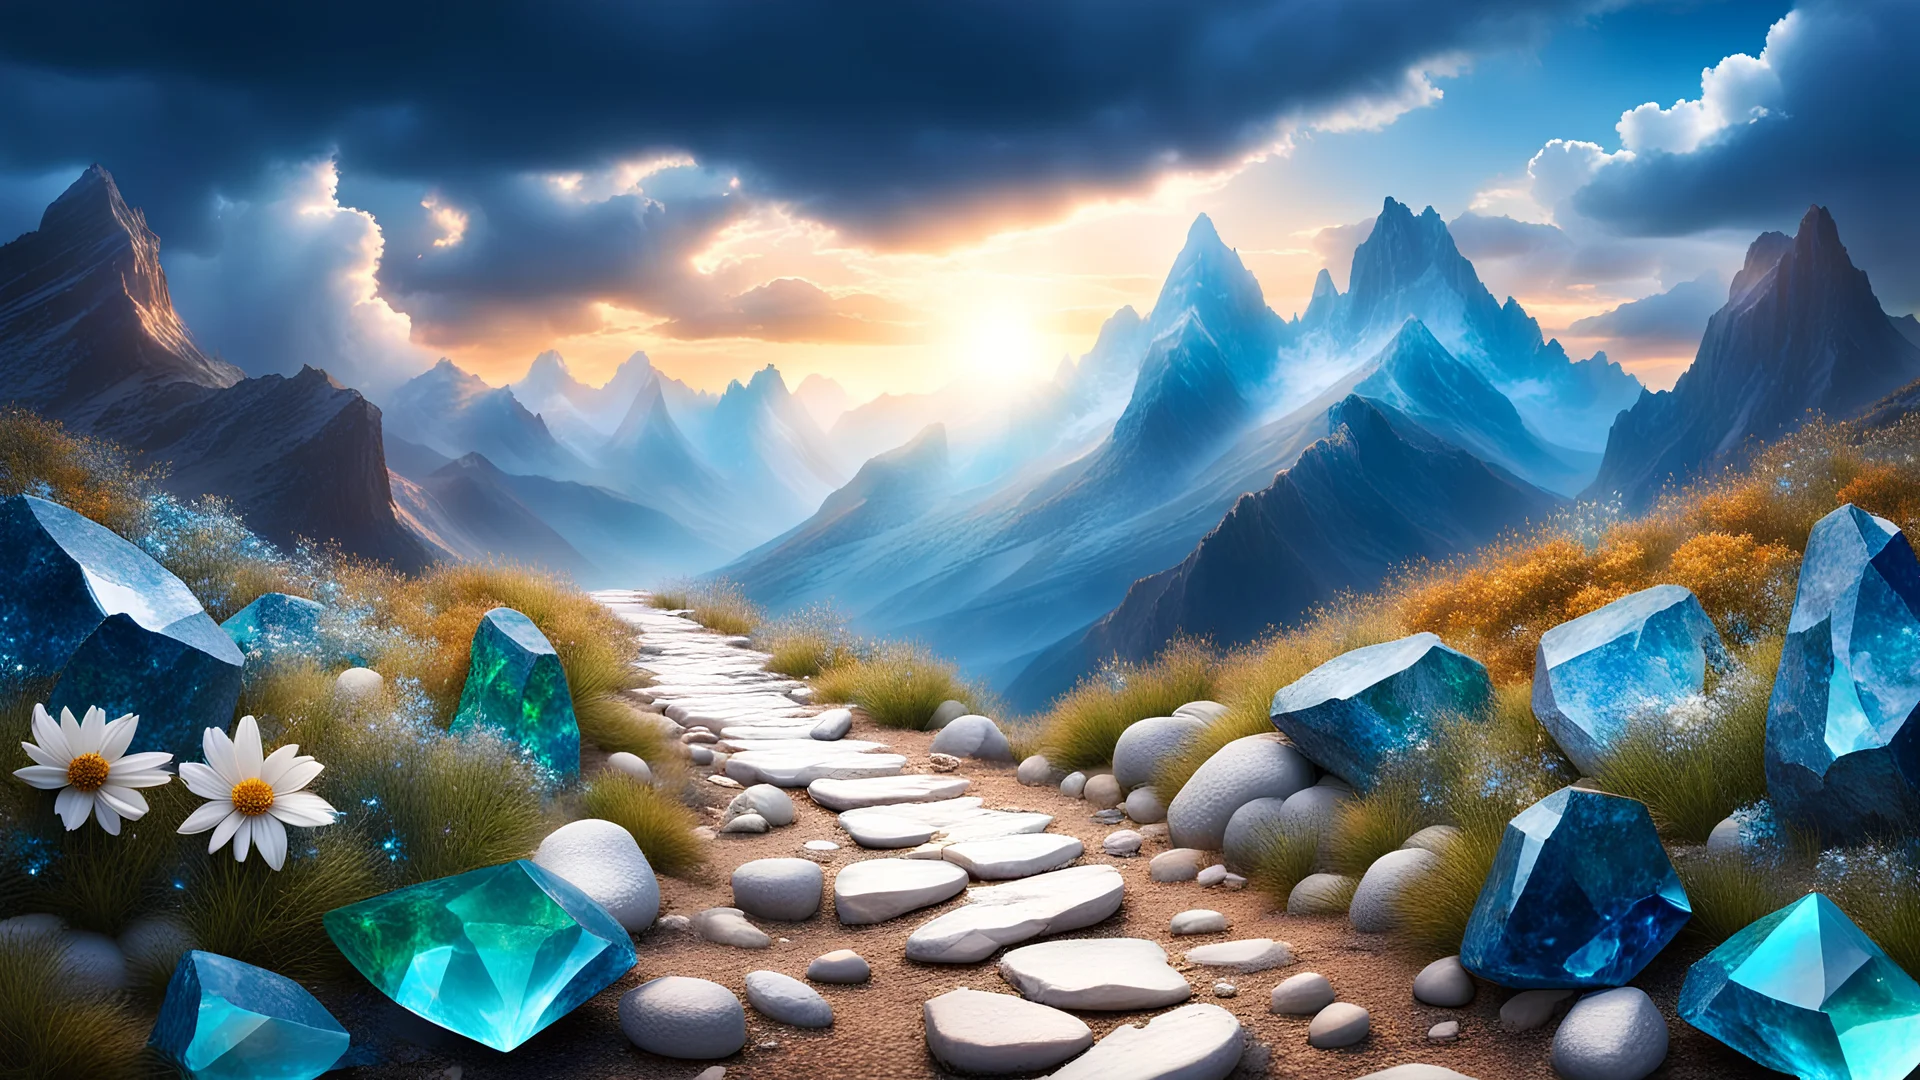 splendido sentiero di montagna tempestato di topazi smeraldi pietre preziose luccicanti con paesaggio floreale cristalli azzurri e bianchi sole nascente cielo azzurro